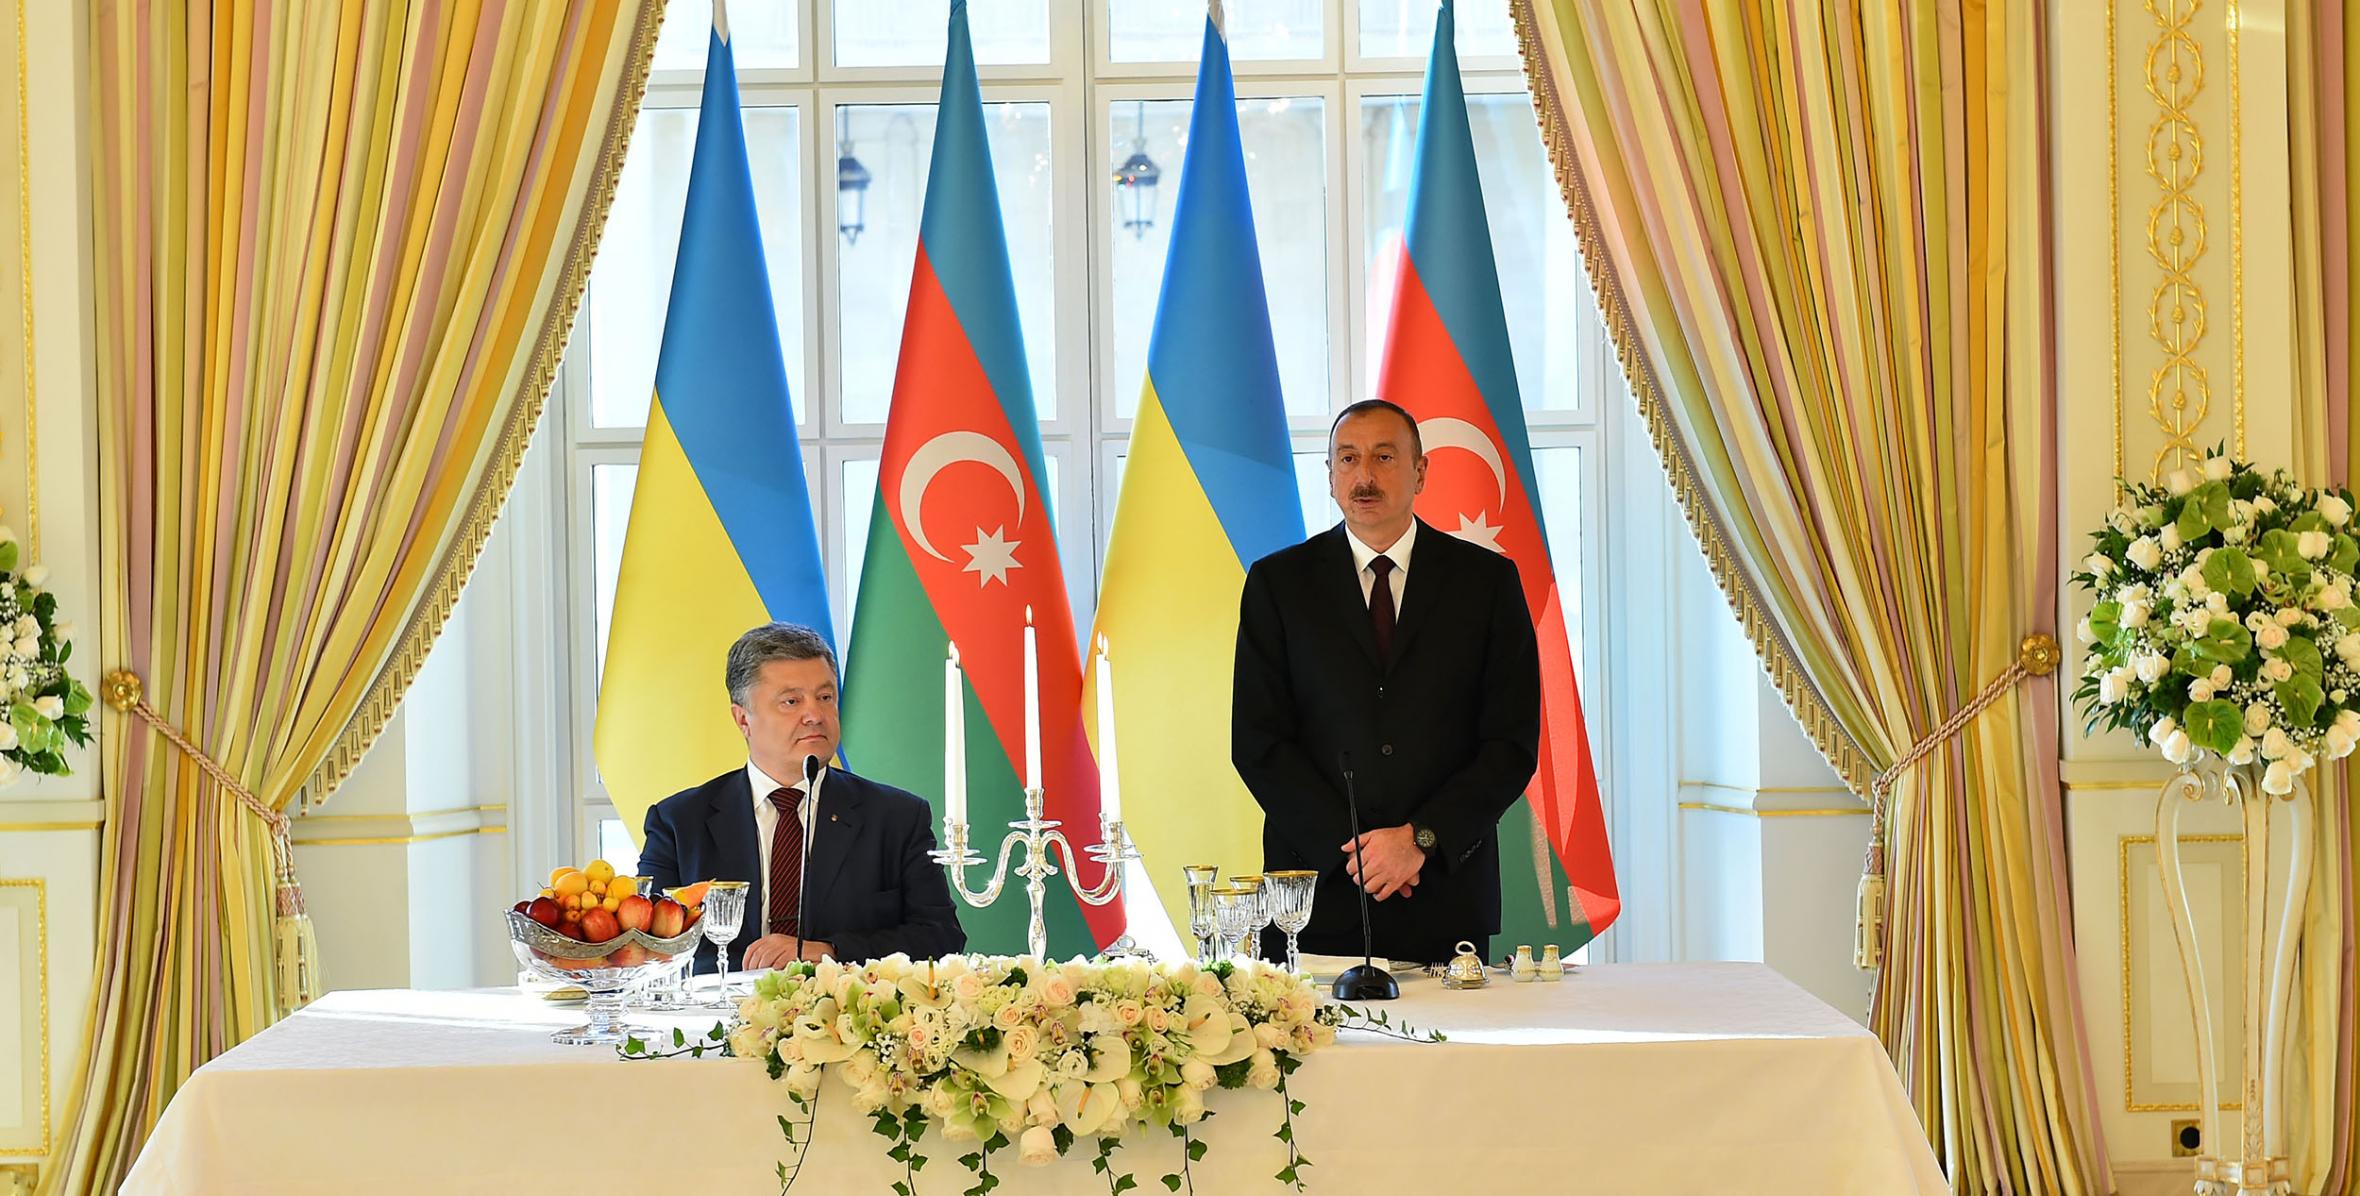 Ilham Aliyev hosted dinner reception in honor of Ukrainian President Petro Poroshenko